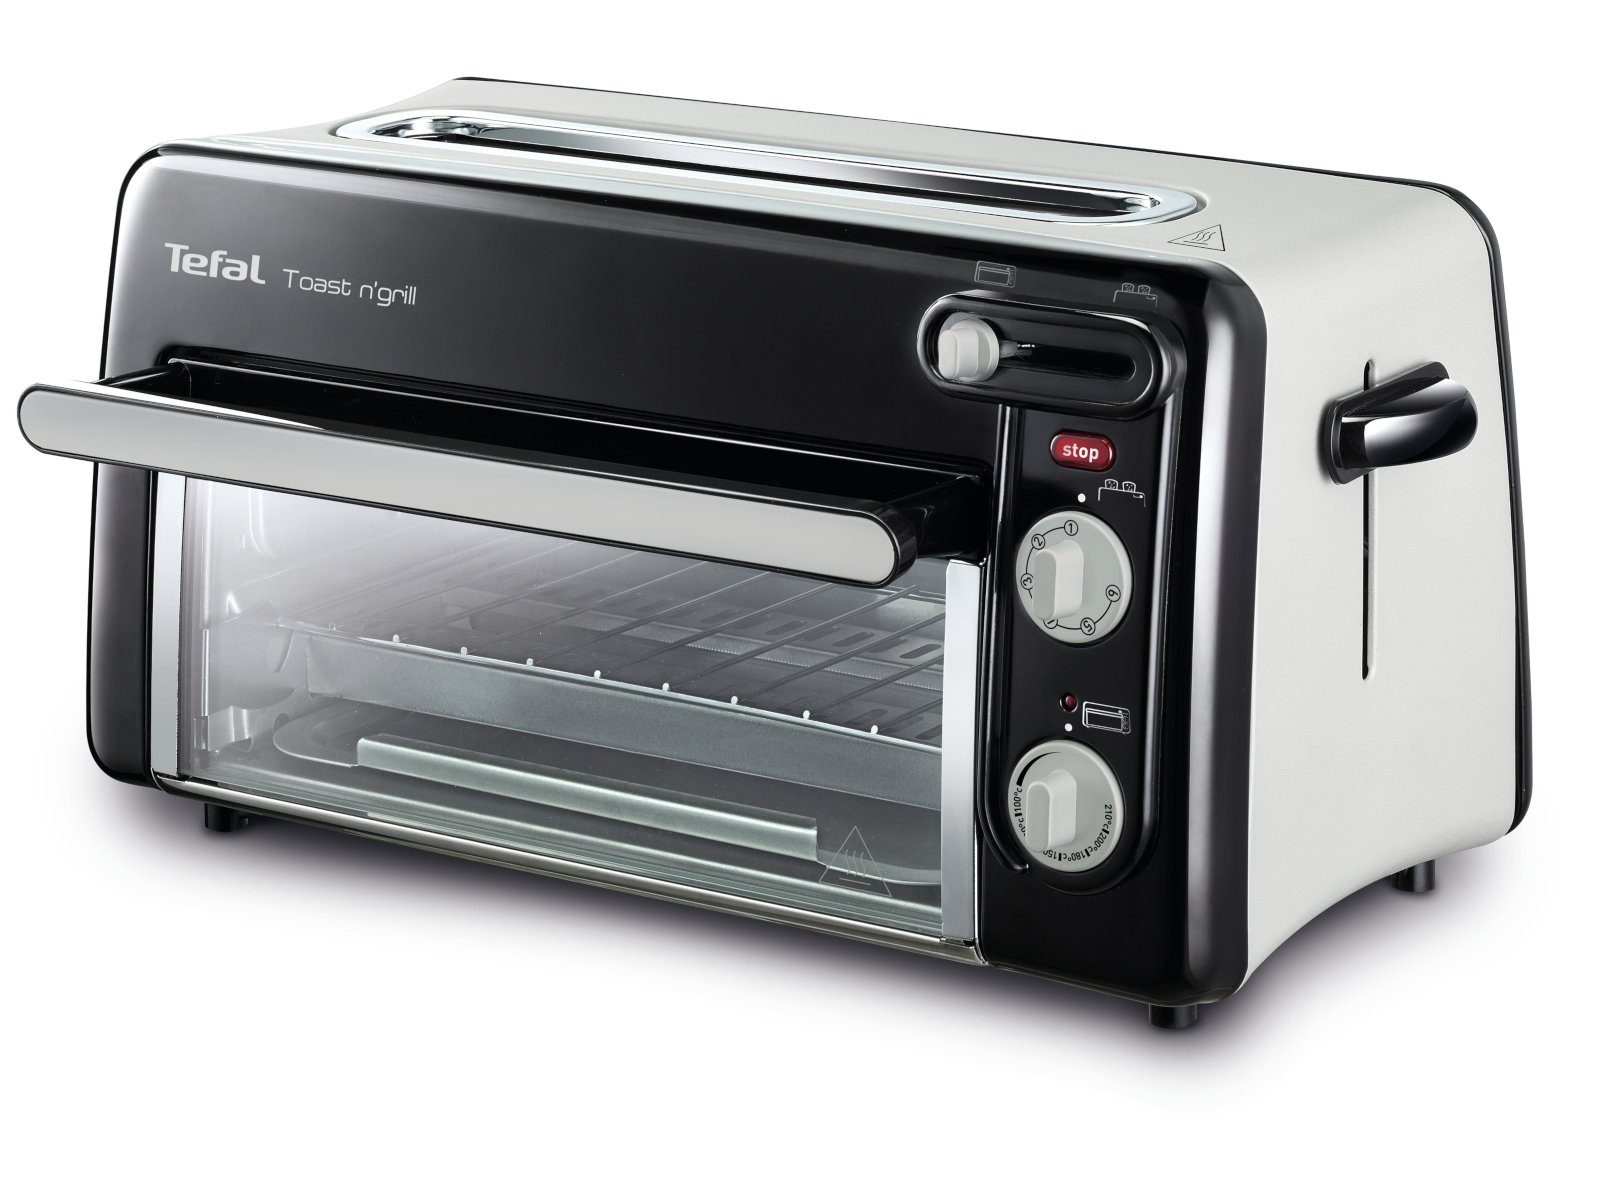 Grill Toast Tefal Mini Tischbackofen n' W 2-in-1-Toaster Ofen, Scheiben, Toaster Backofen TL6008 1300 2 für